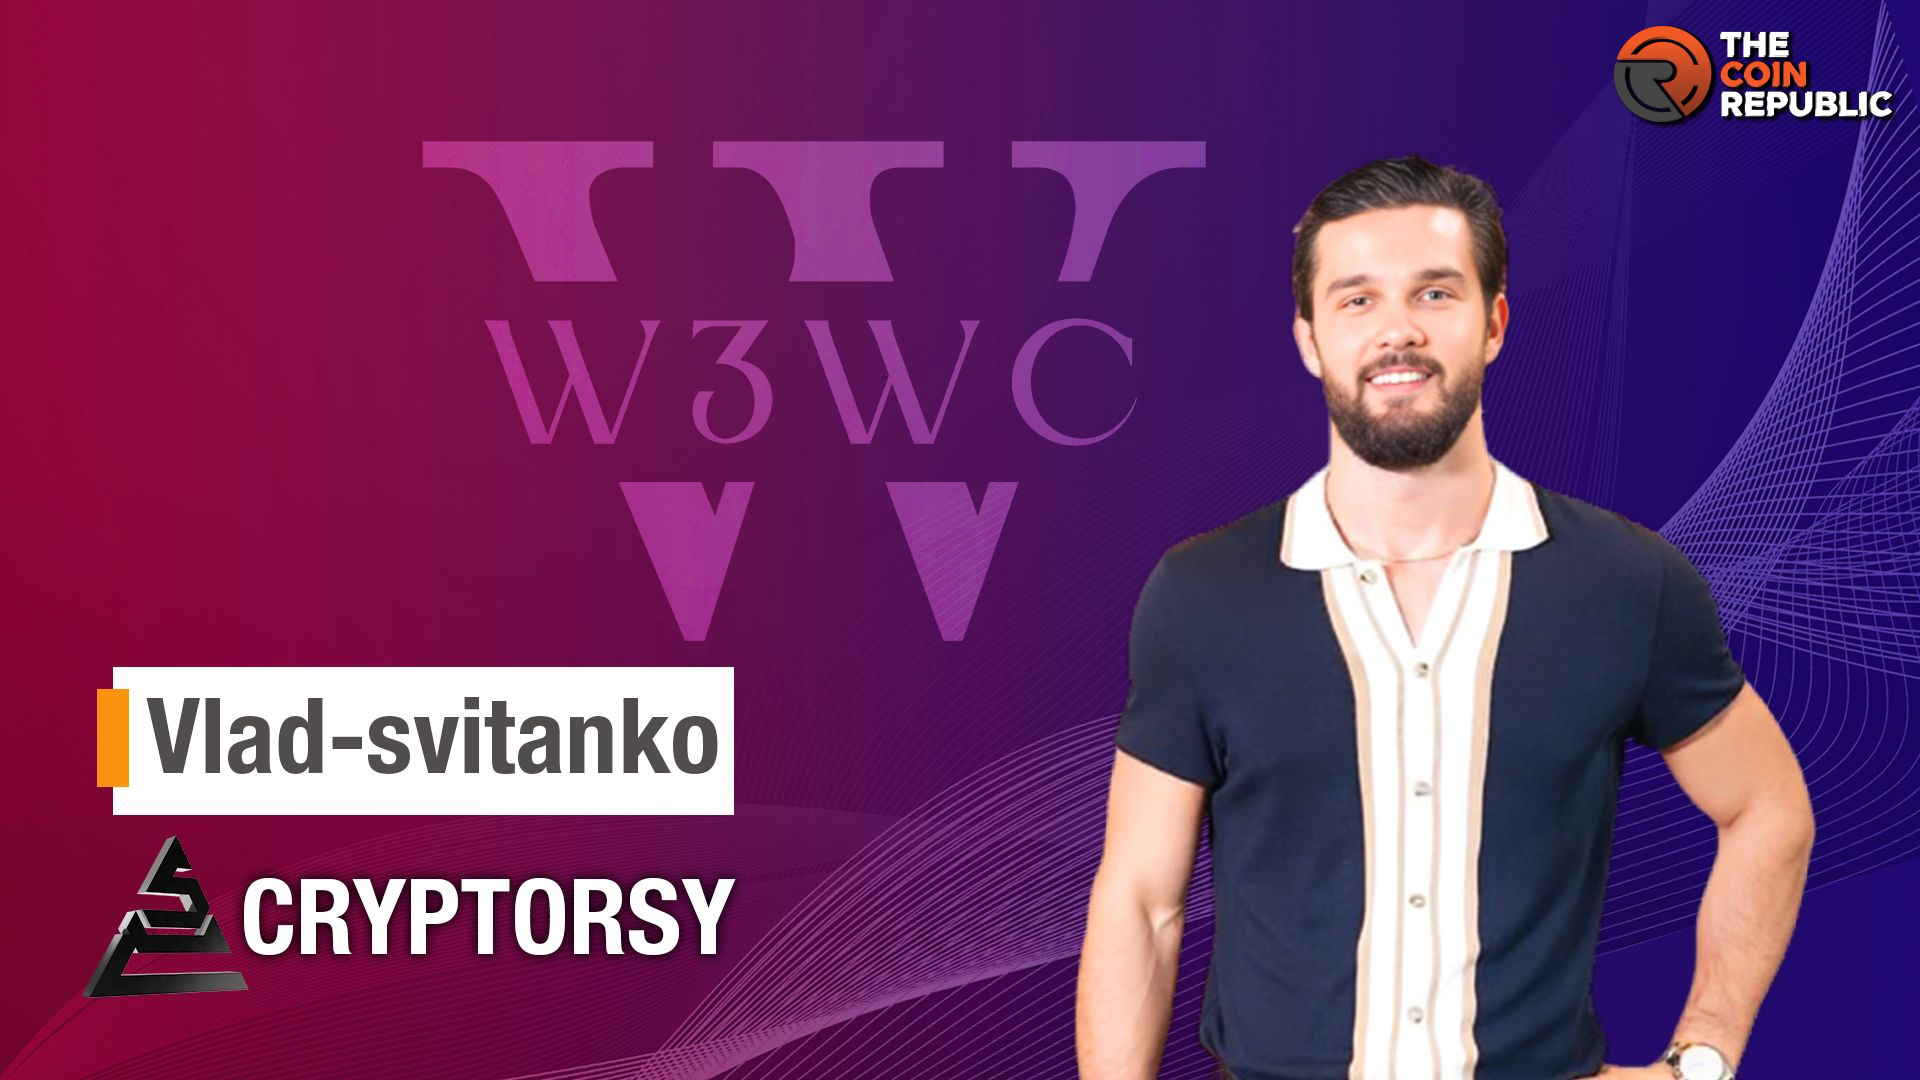 Vlad Svitanko: Founder of Cryptorsy